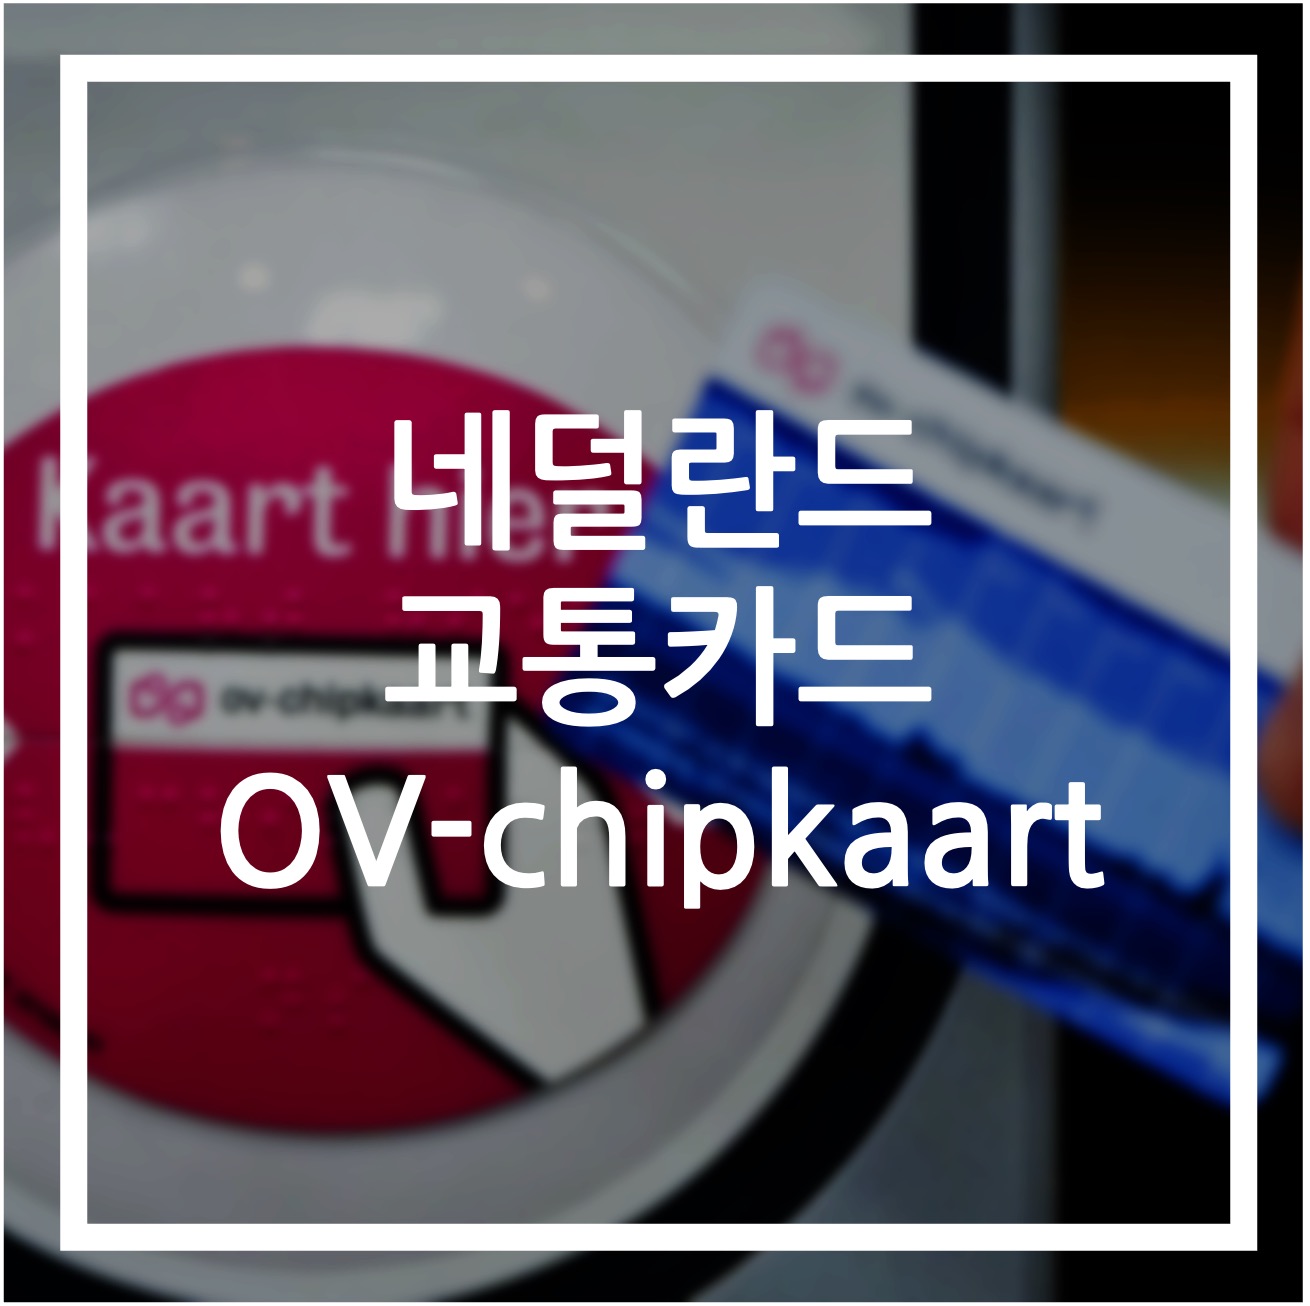 네덜란드 교통카드 ov-chipkaart